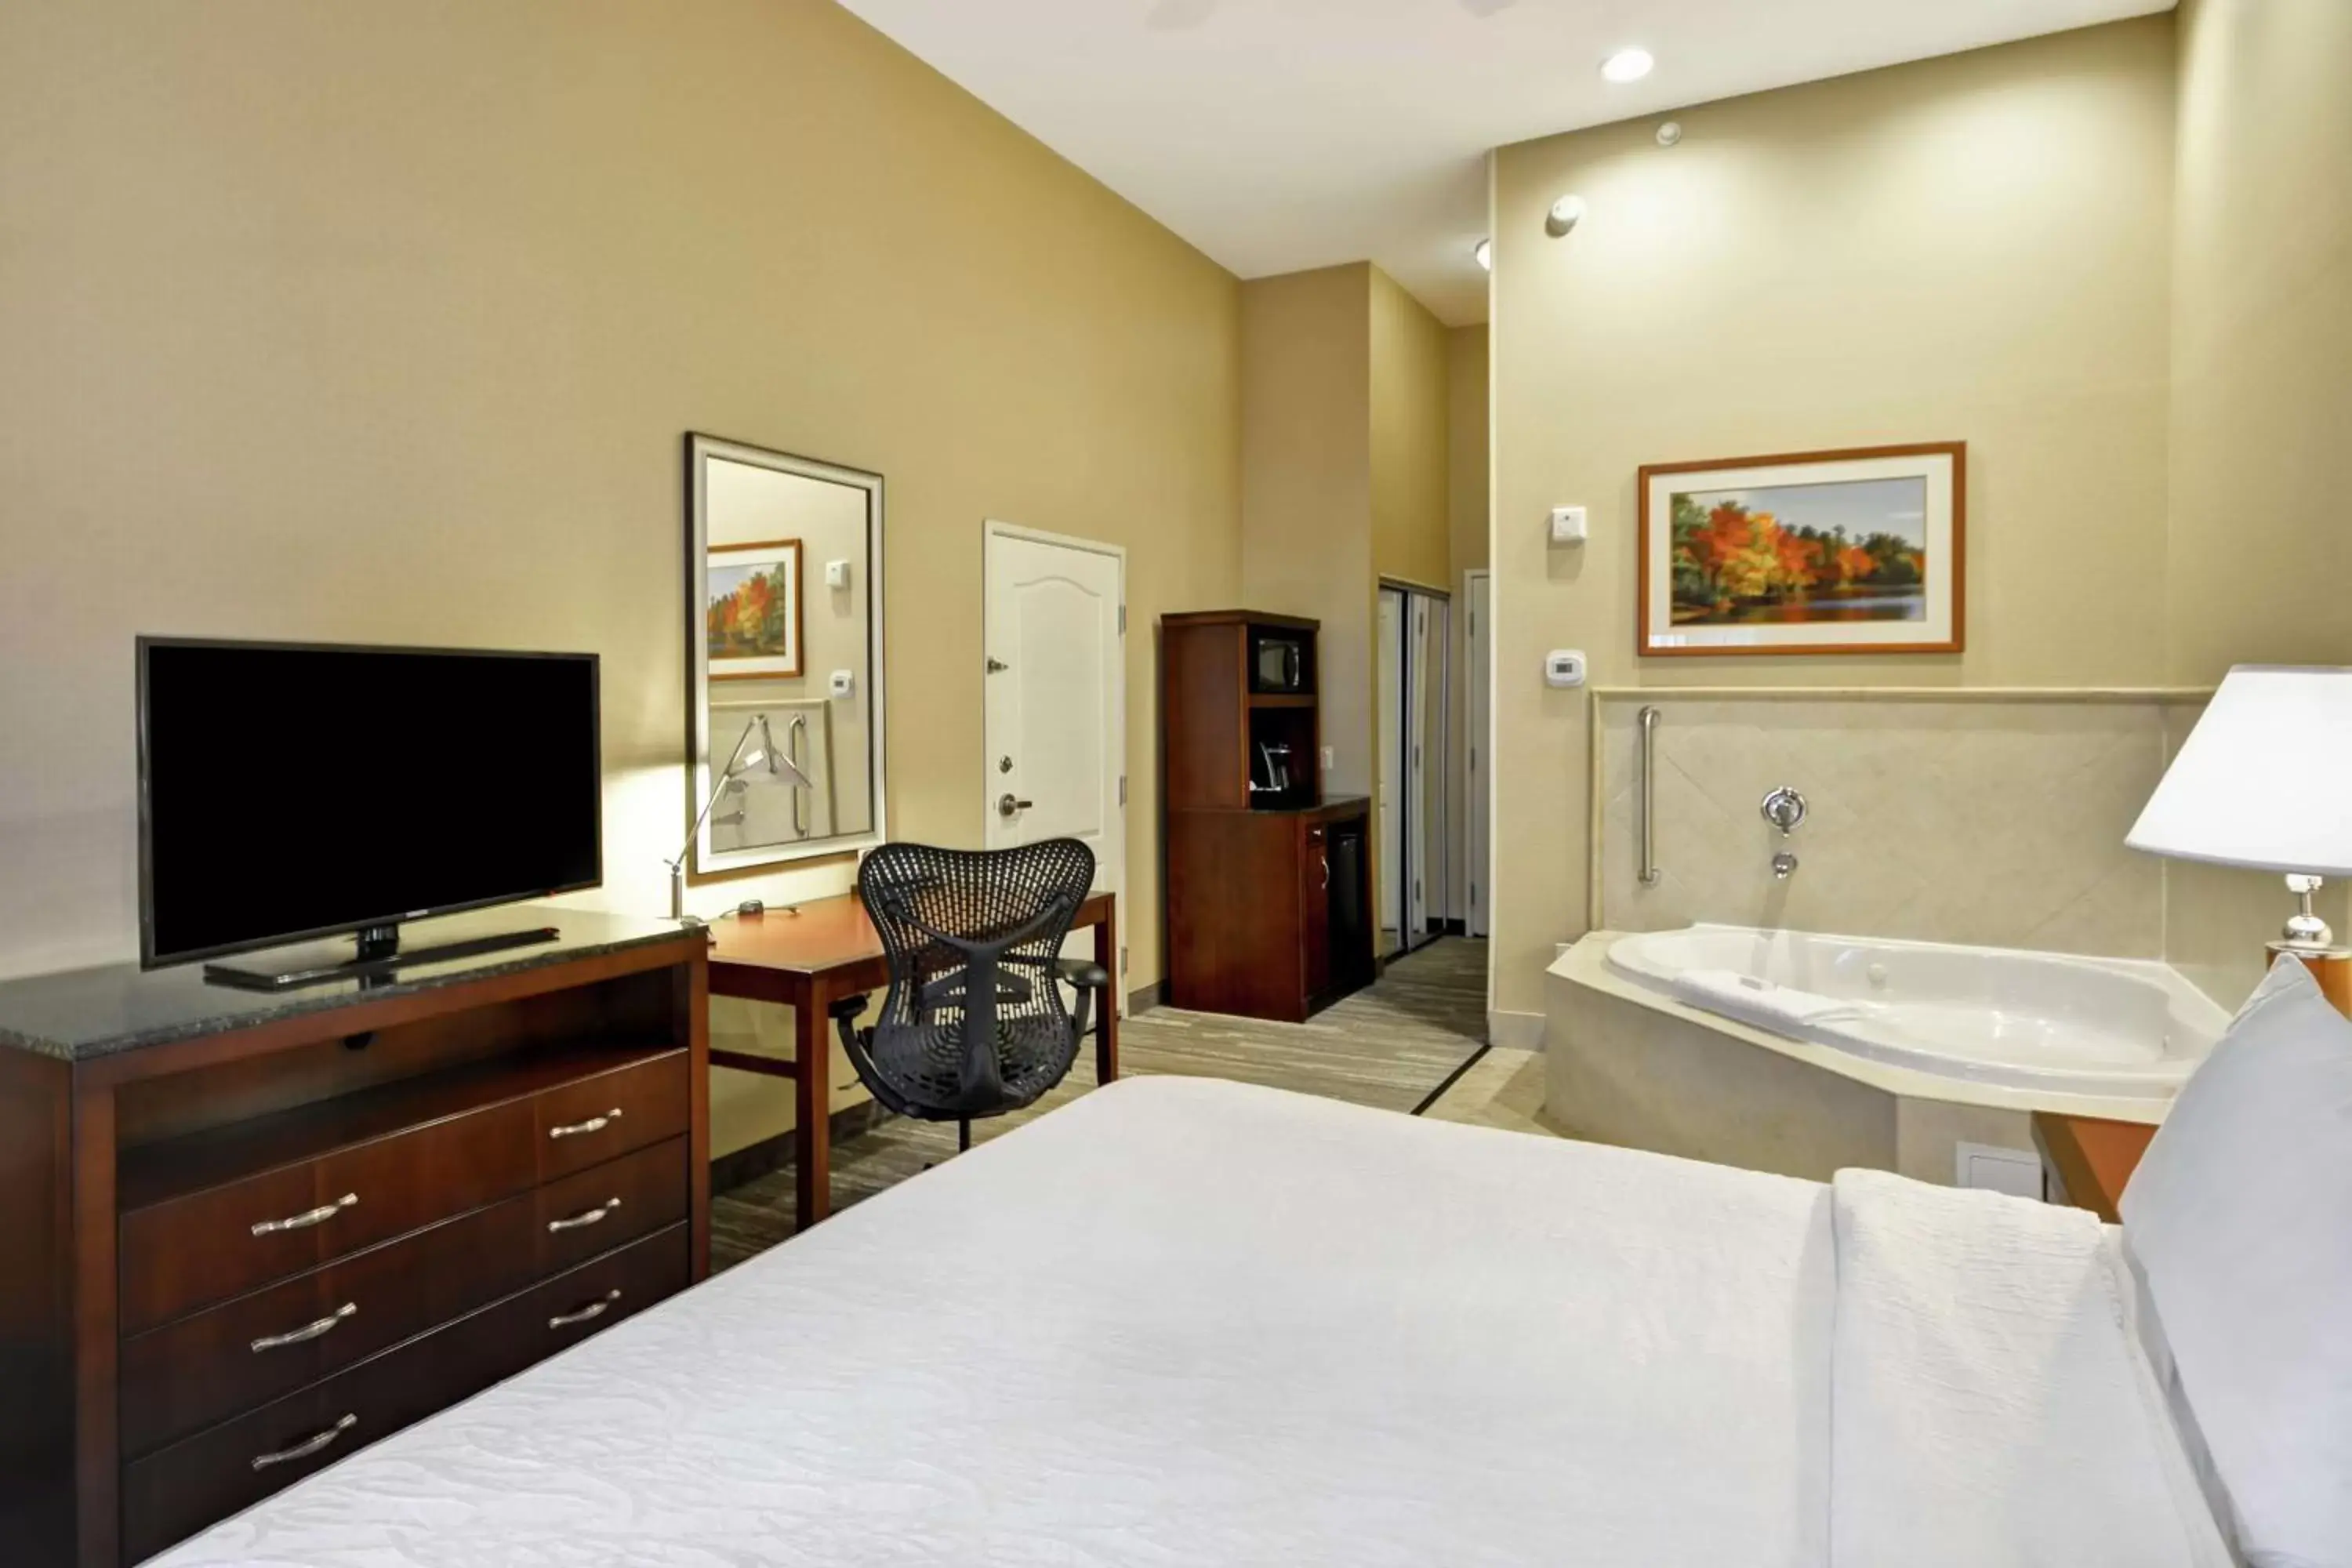 Bedroom, TV/Entertainment Center in Hilton Garden Inn Riverhead